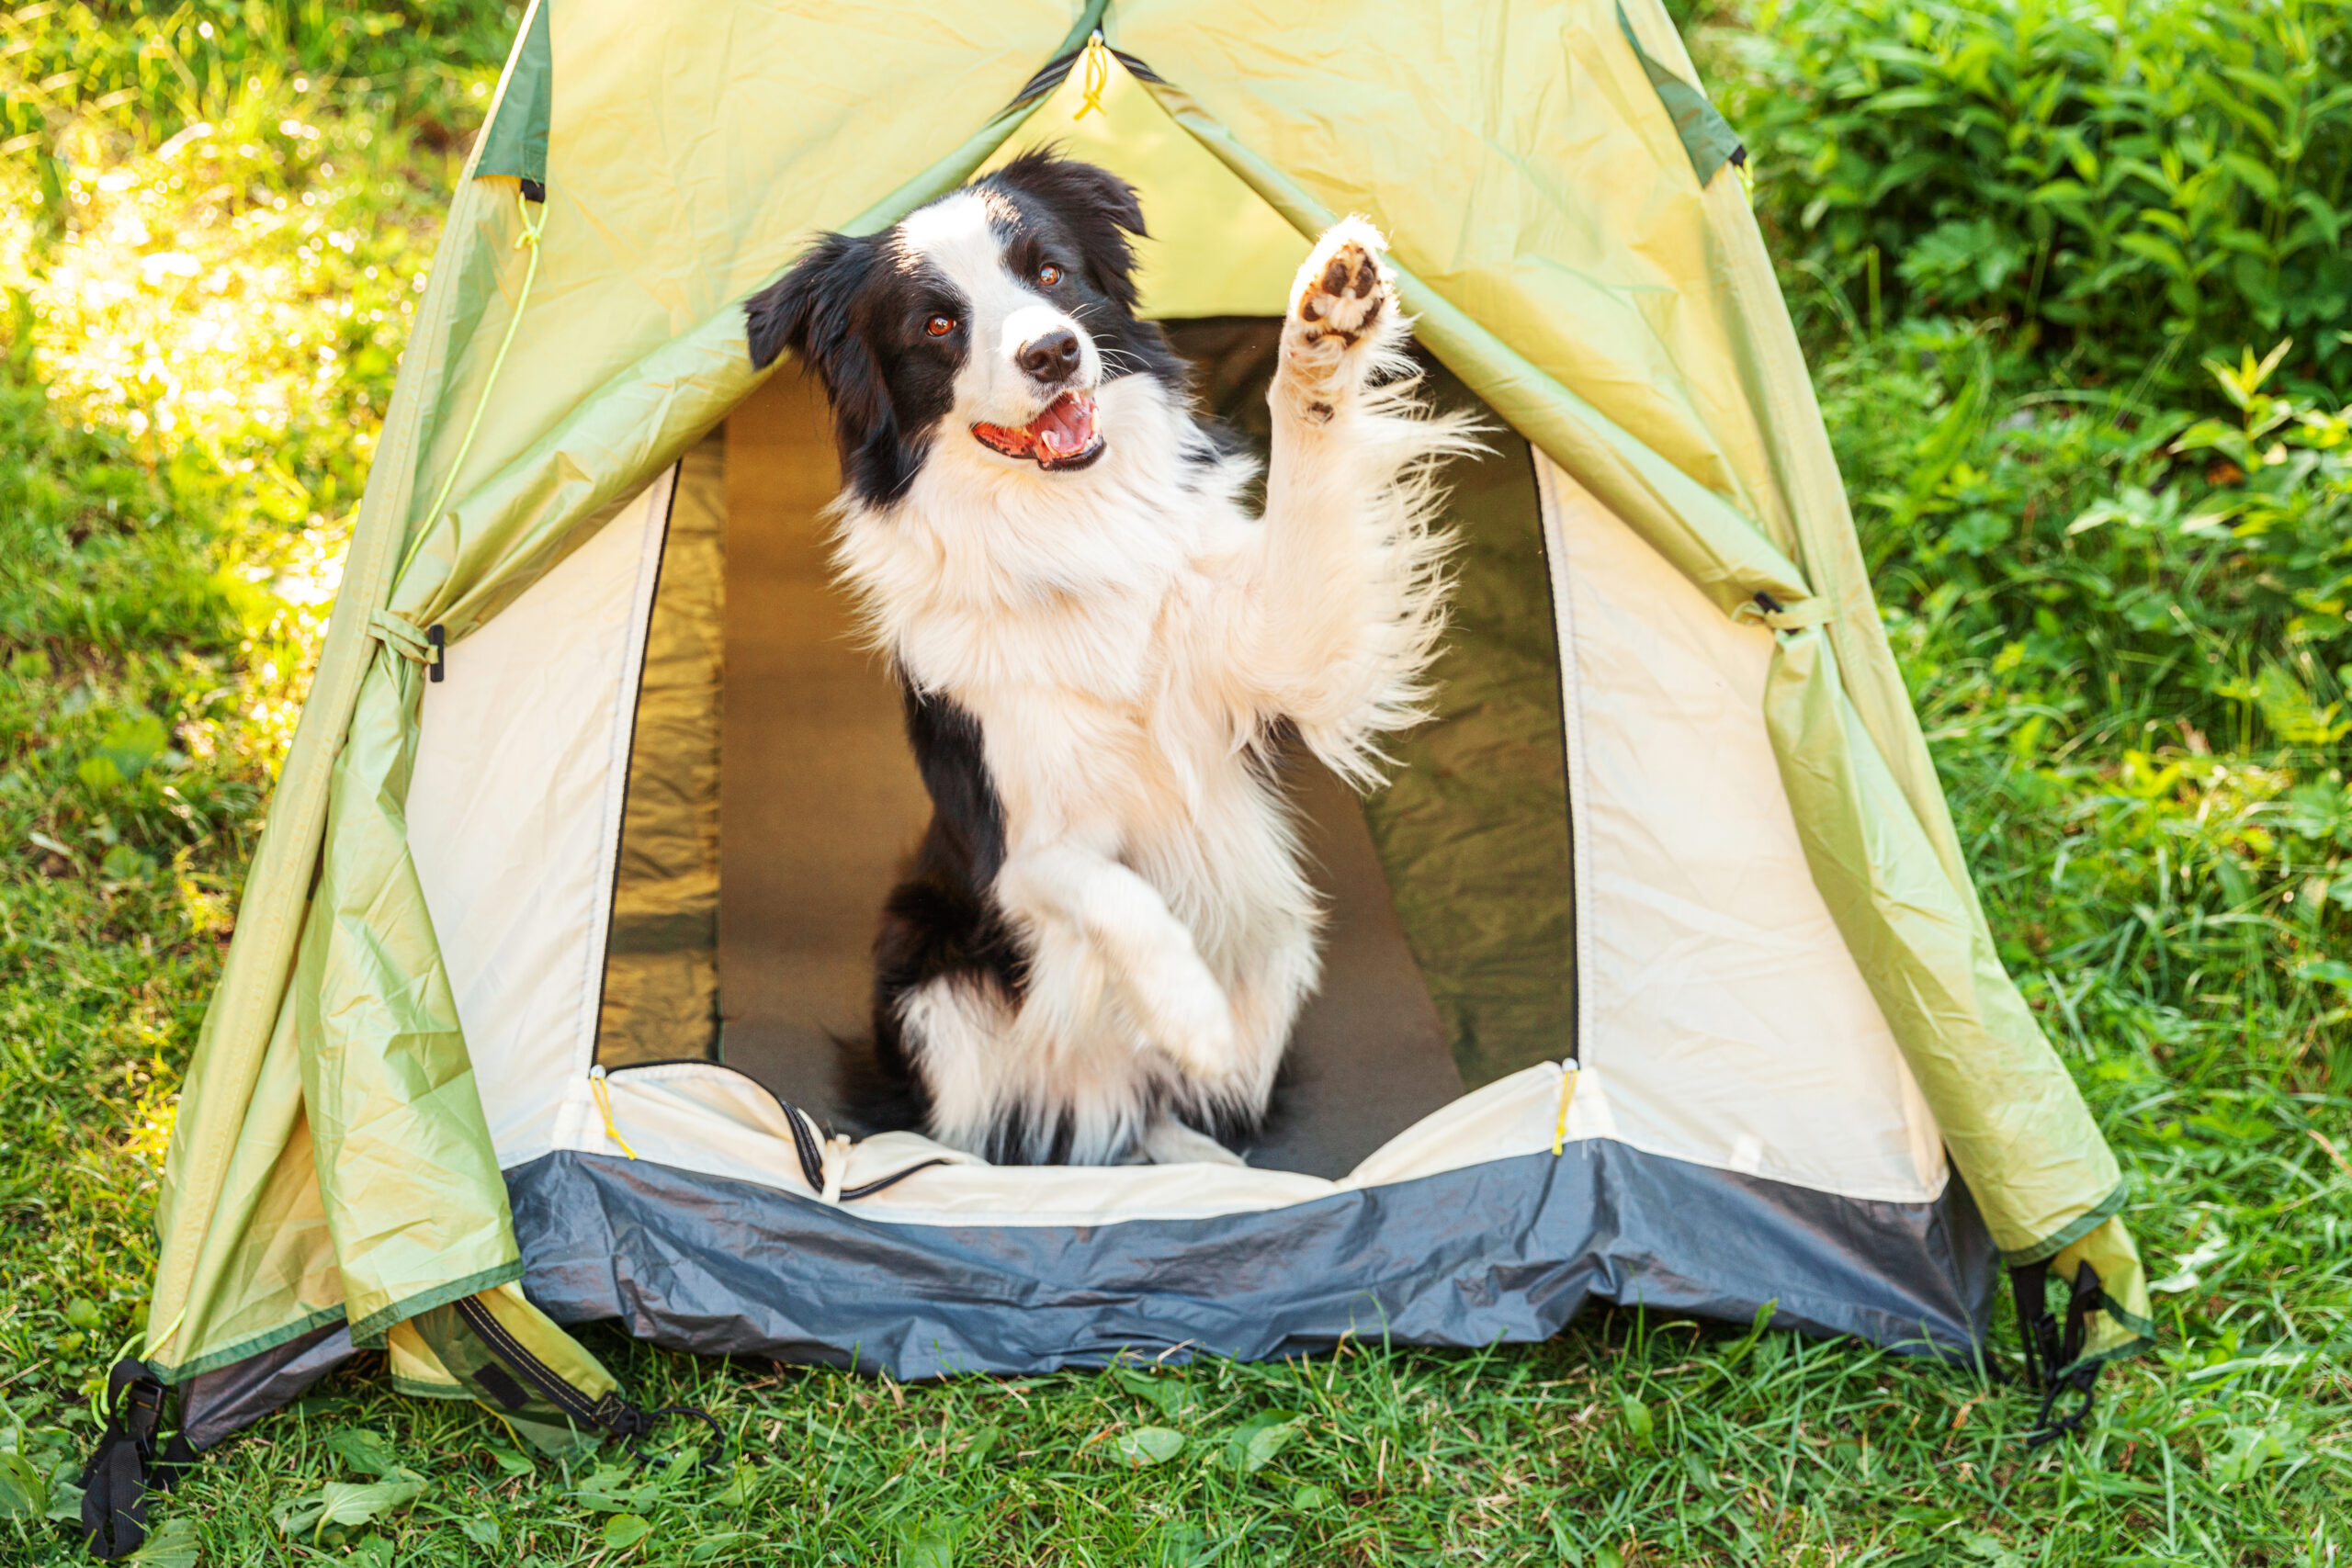 Take your dog camping